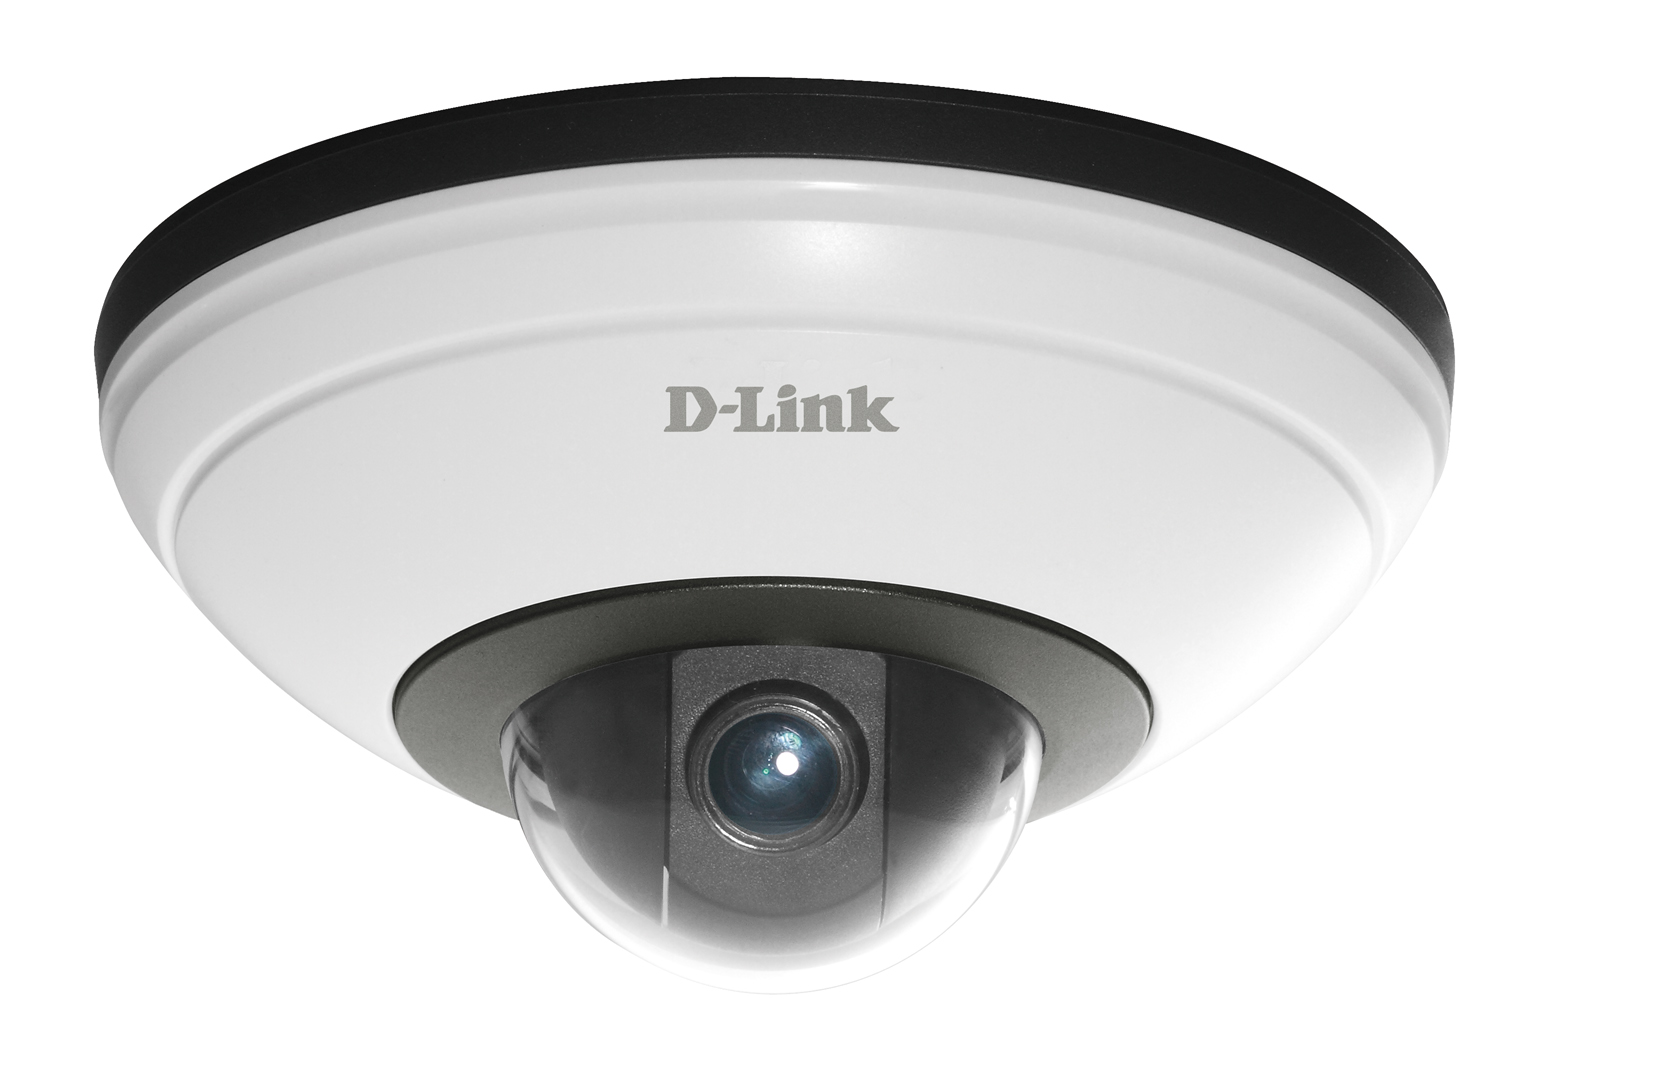 d link wifi security camera